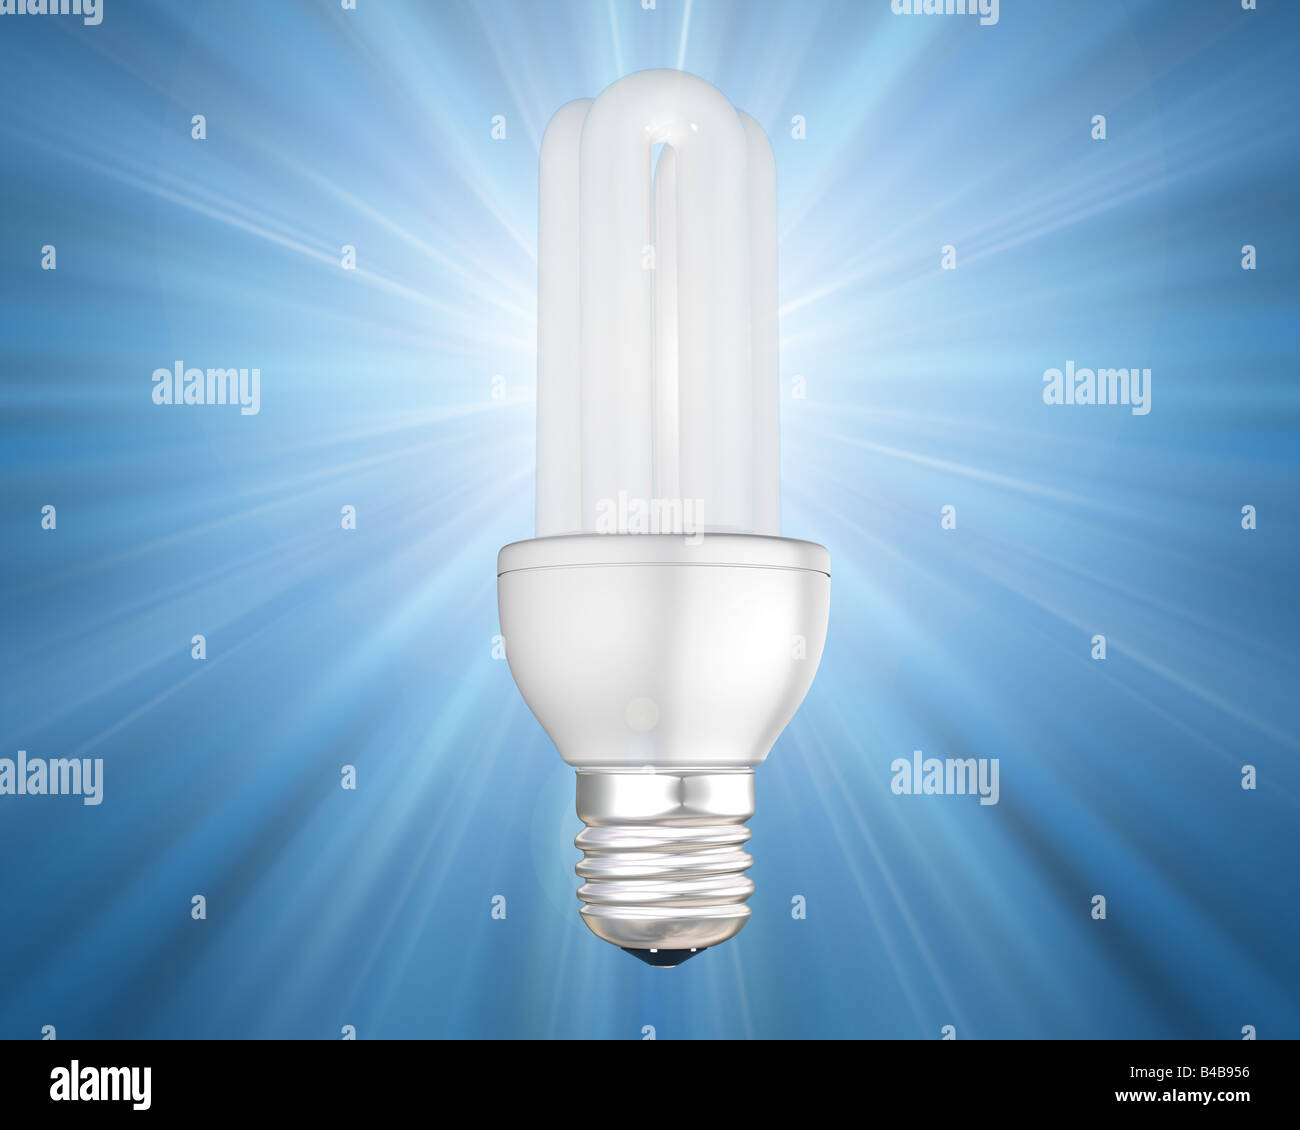 Illustration d'une ampoule à économie d'énergie lumineuse Banque D'Images